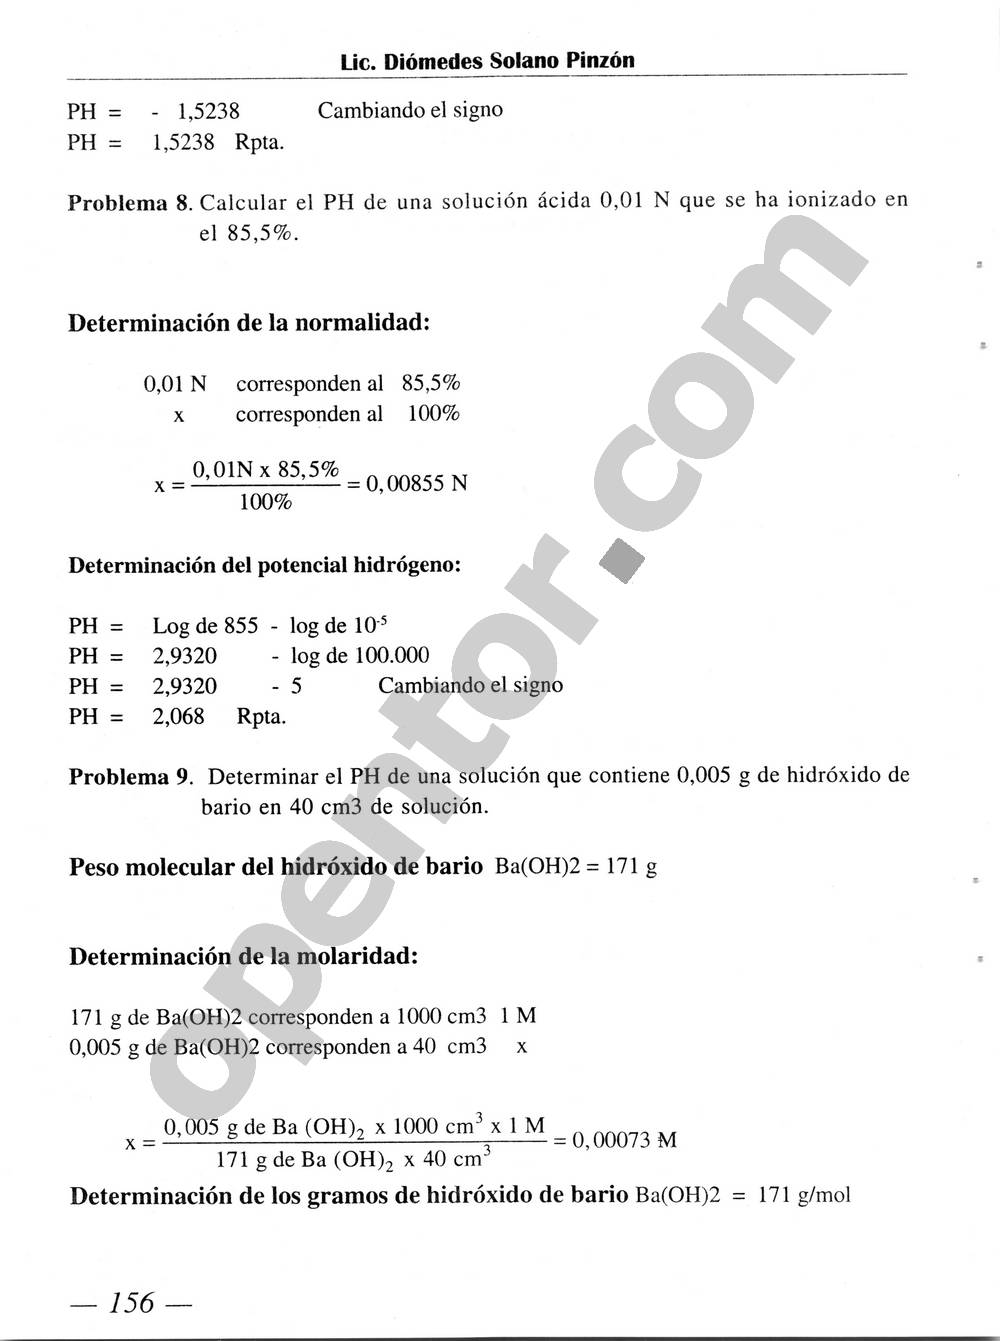 Química Simplificada de Diómedes Solano - Página 156